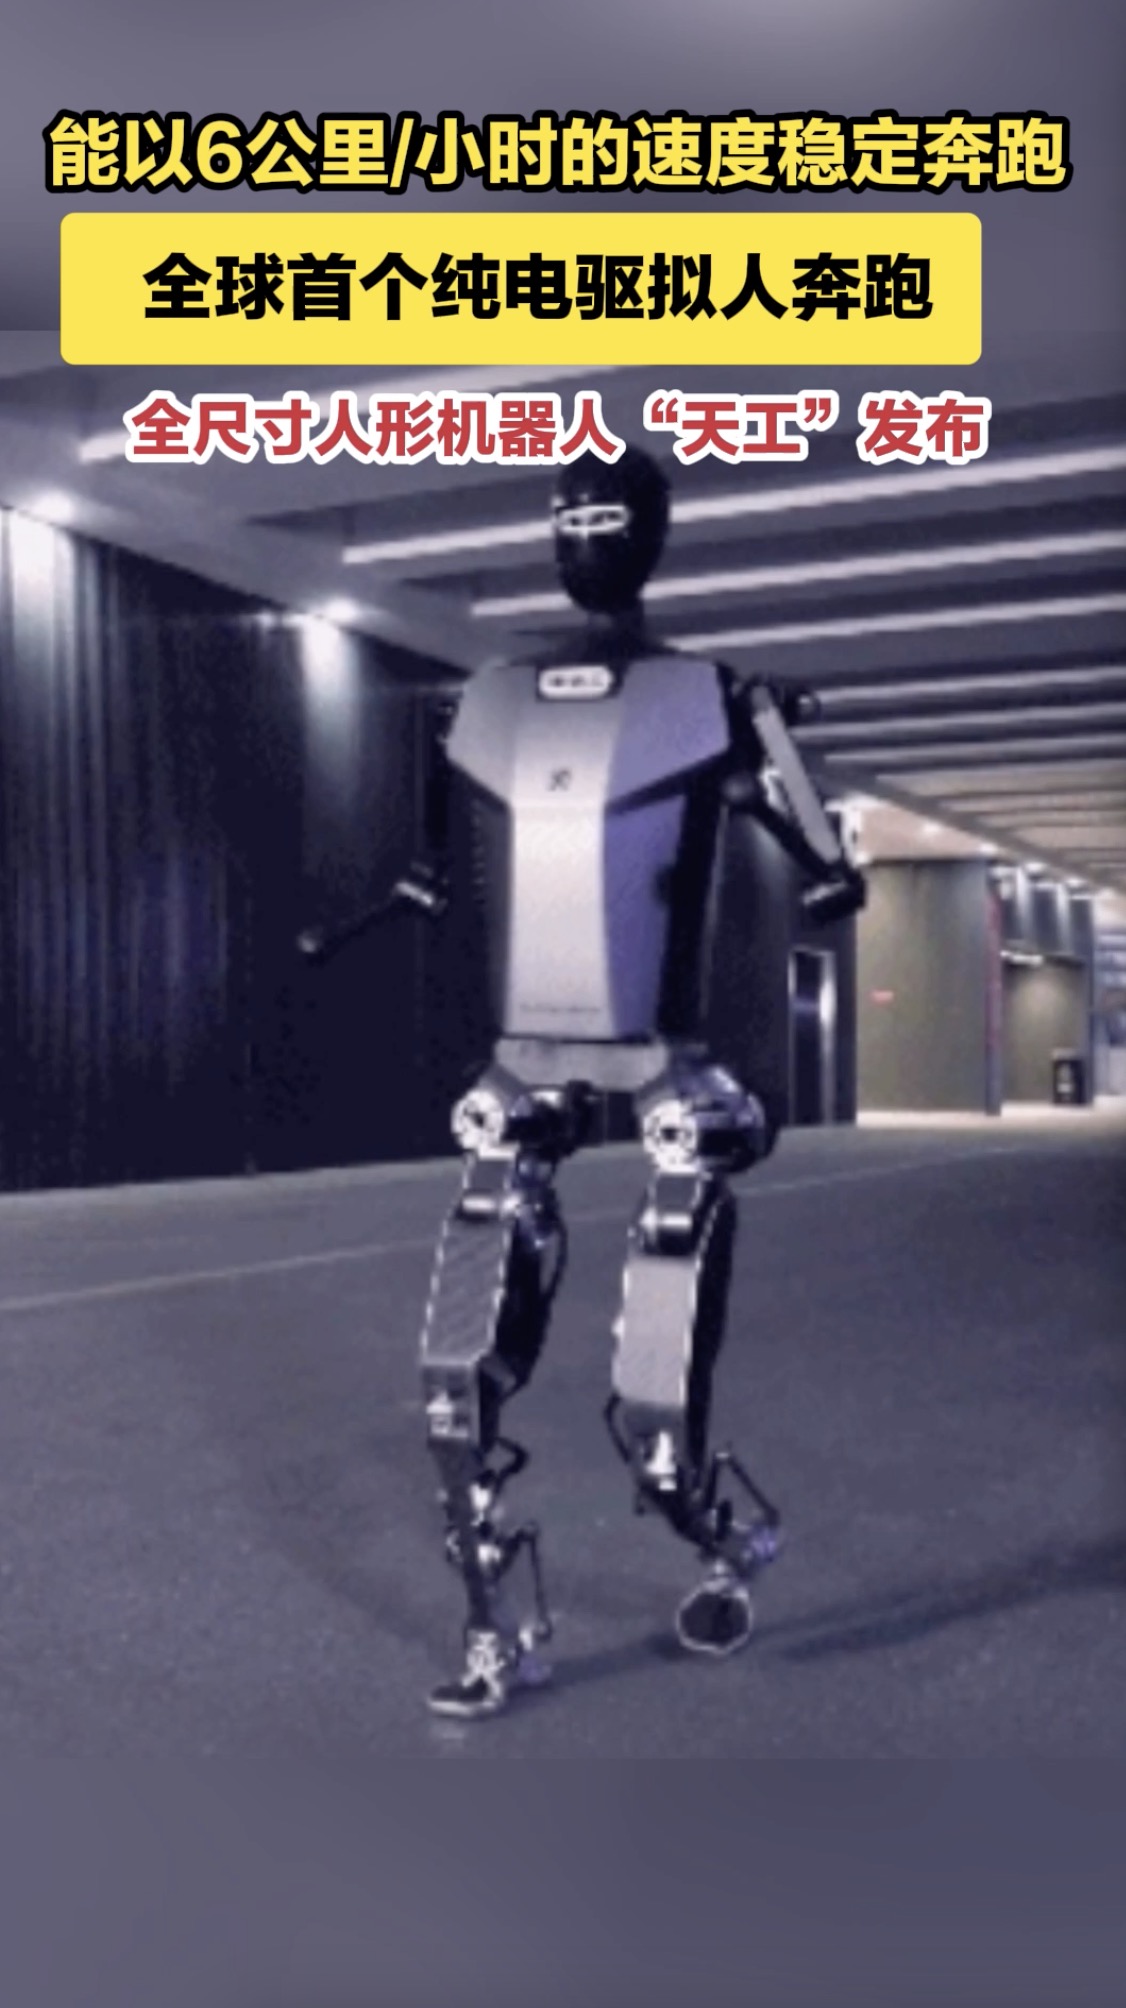 能以6公里/小时的速度稳定奔跑 人形机器人天工发布 全球首个纯电驱拟人奔跑全尺寸人形机器人